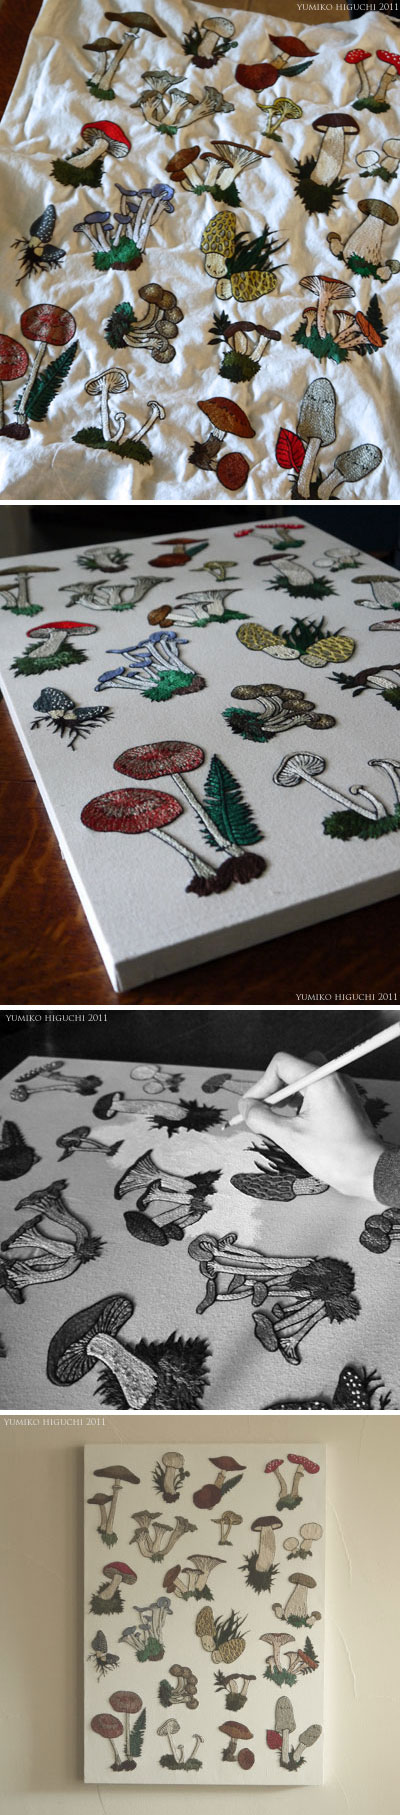 Mushrooms-Embroidery